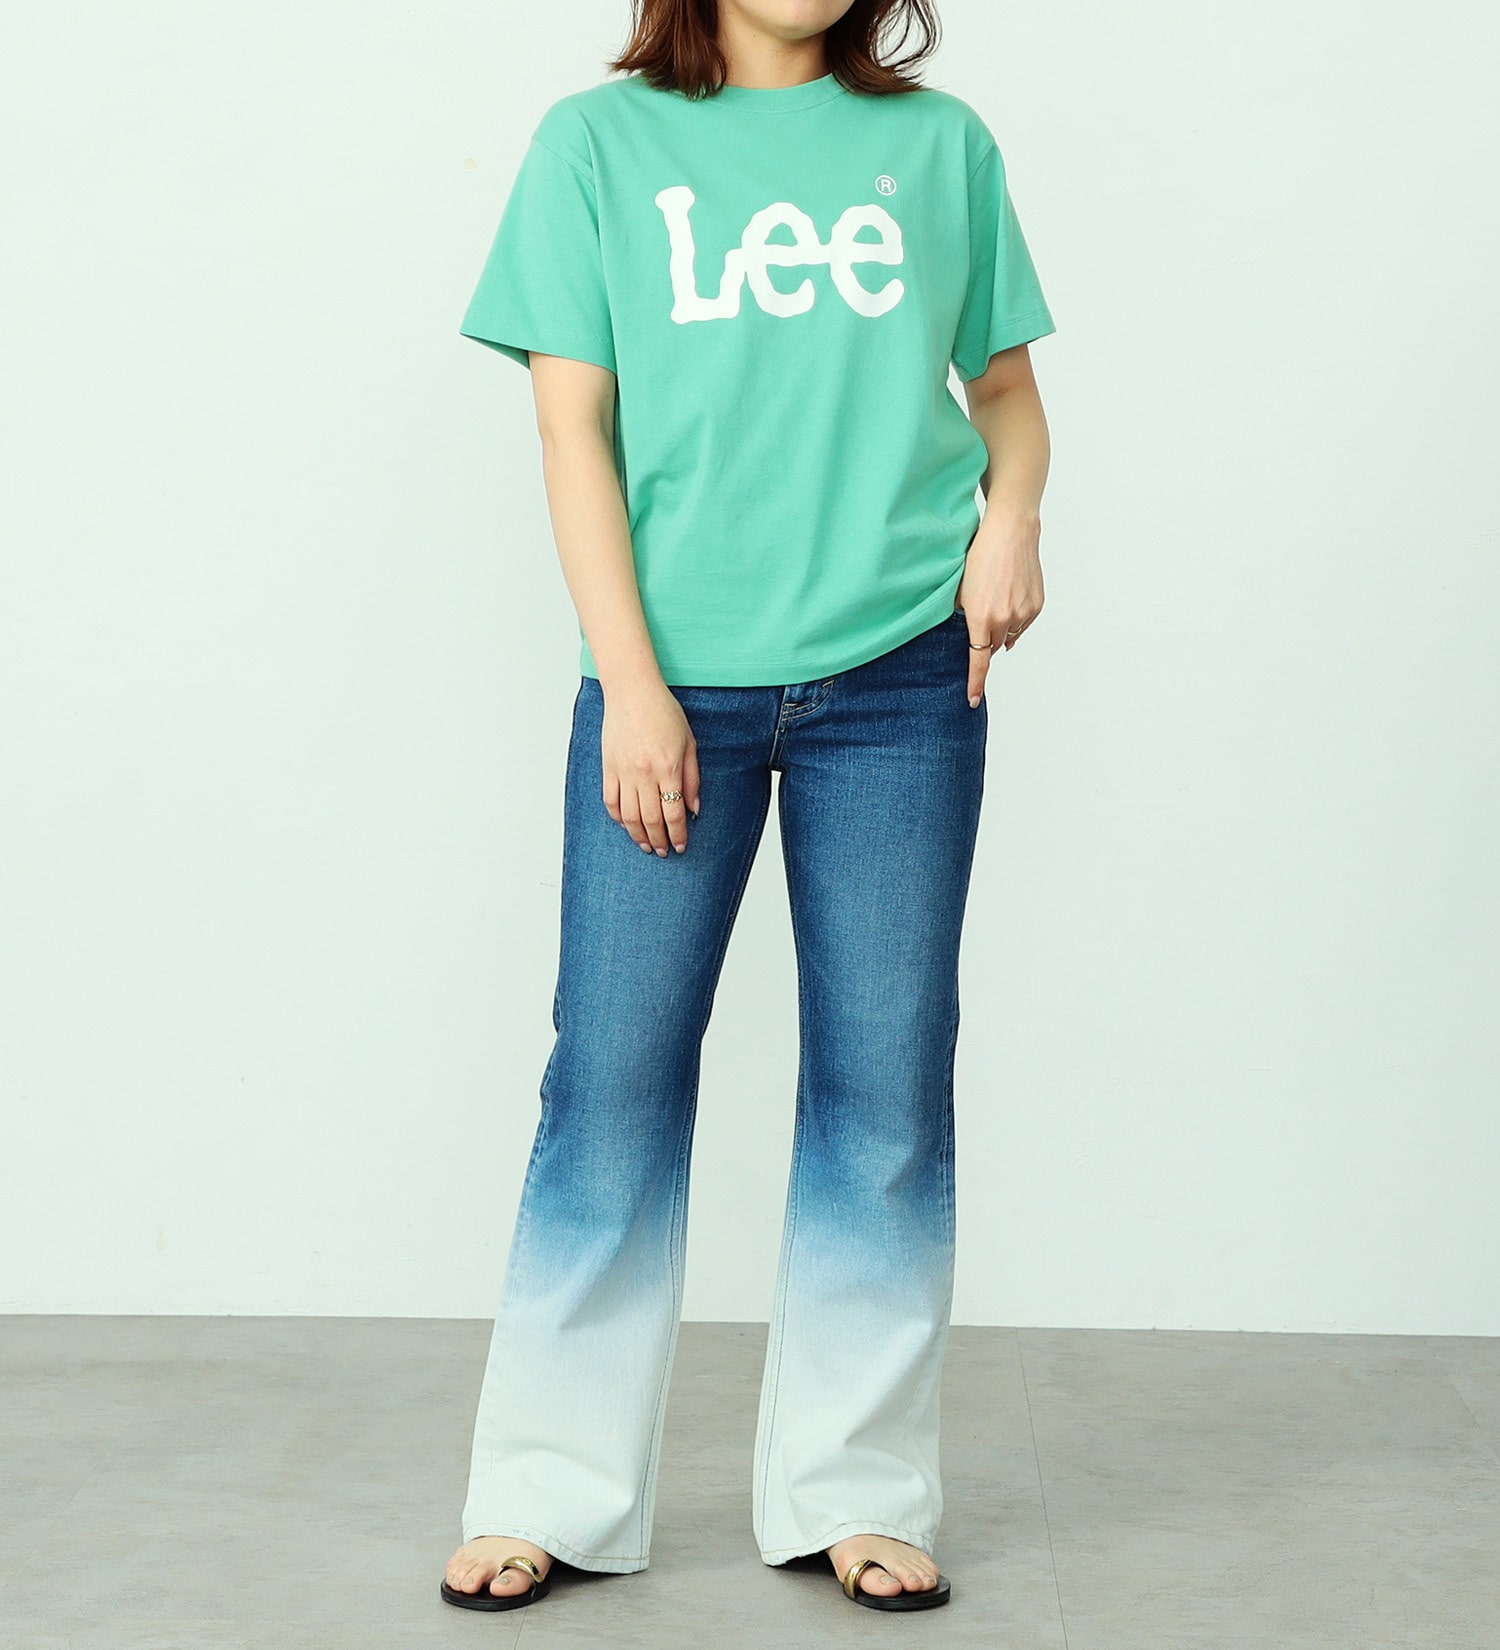 Lee(リー)のLee ロゴ ショートスリーブTee|トップス/Tシャツ/カットソー/メンズ|ミント